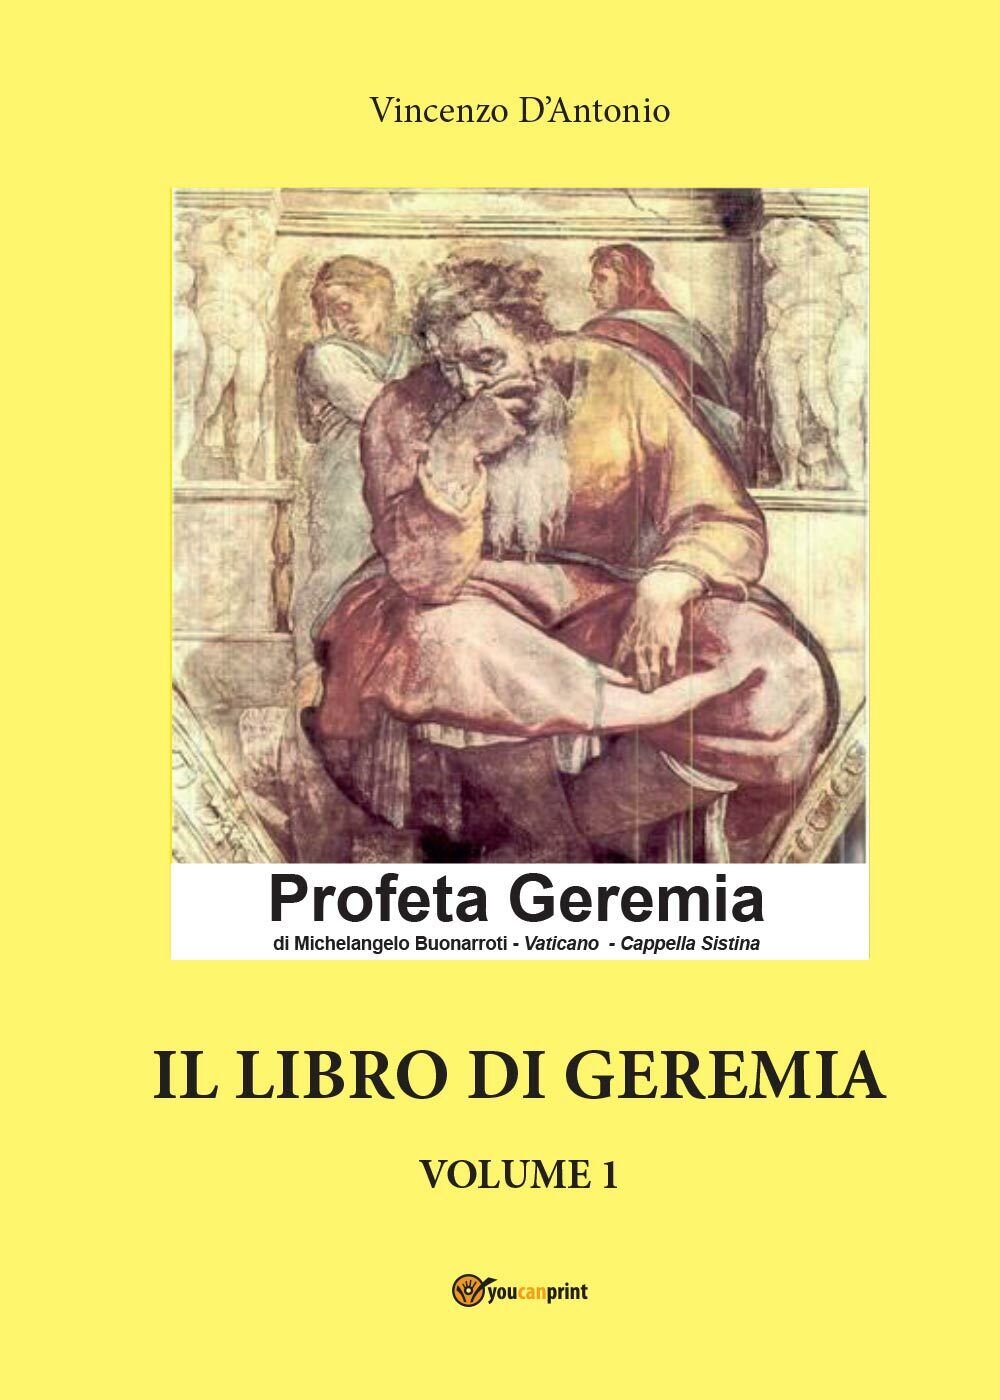 Il libro di Geremia - Volume 1  di Vincenzo d'Antonio,  2016,  Youcanprint